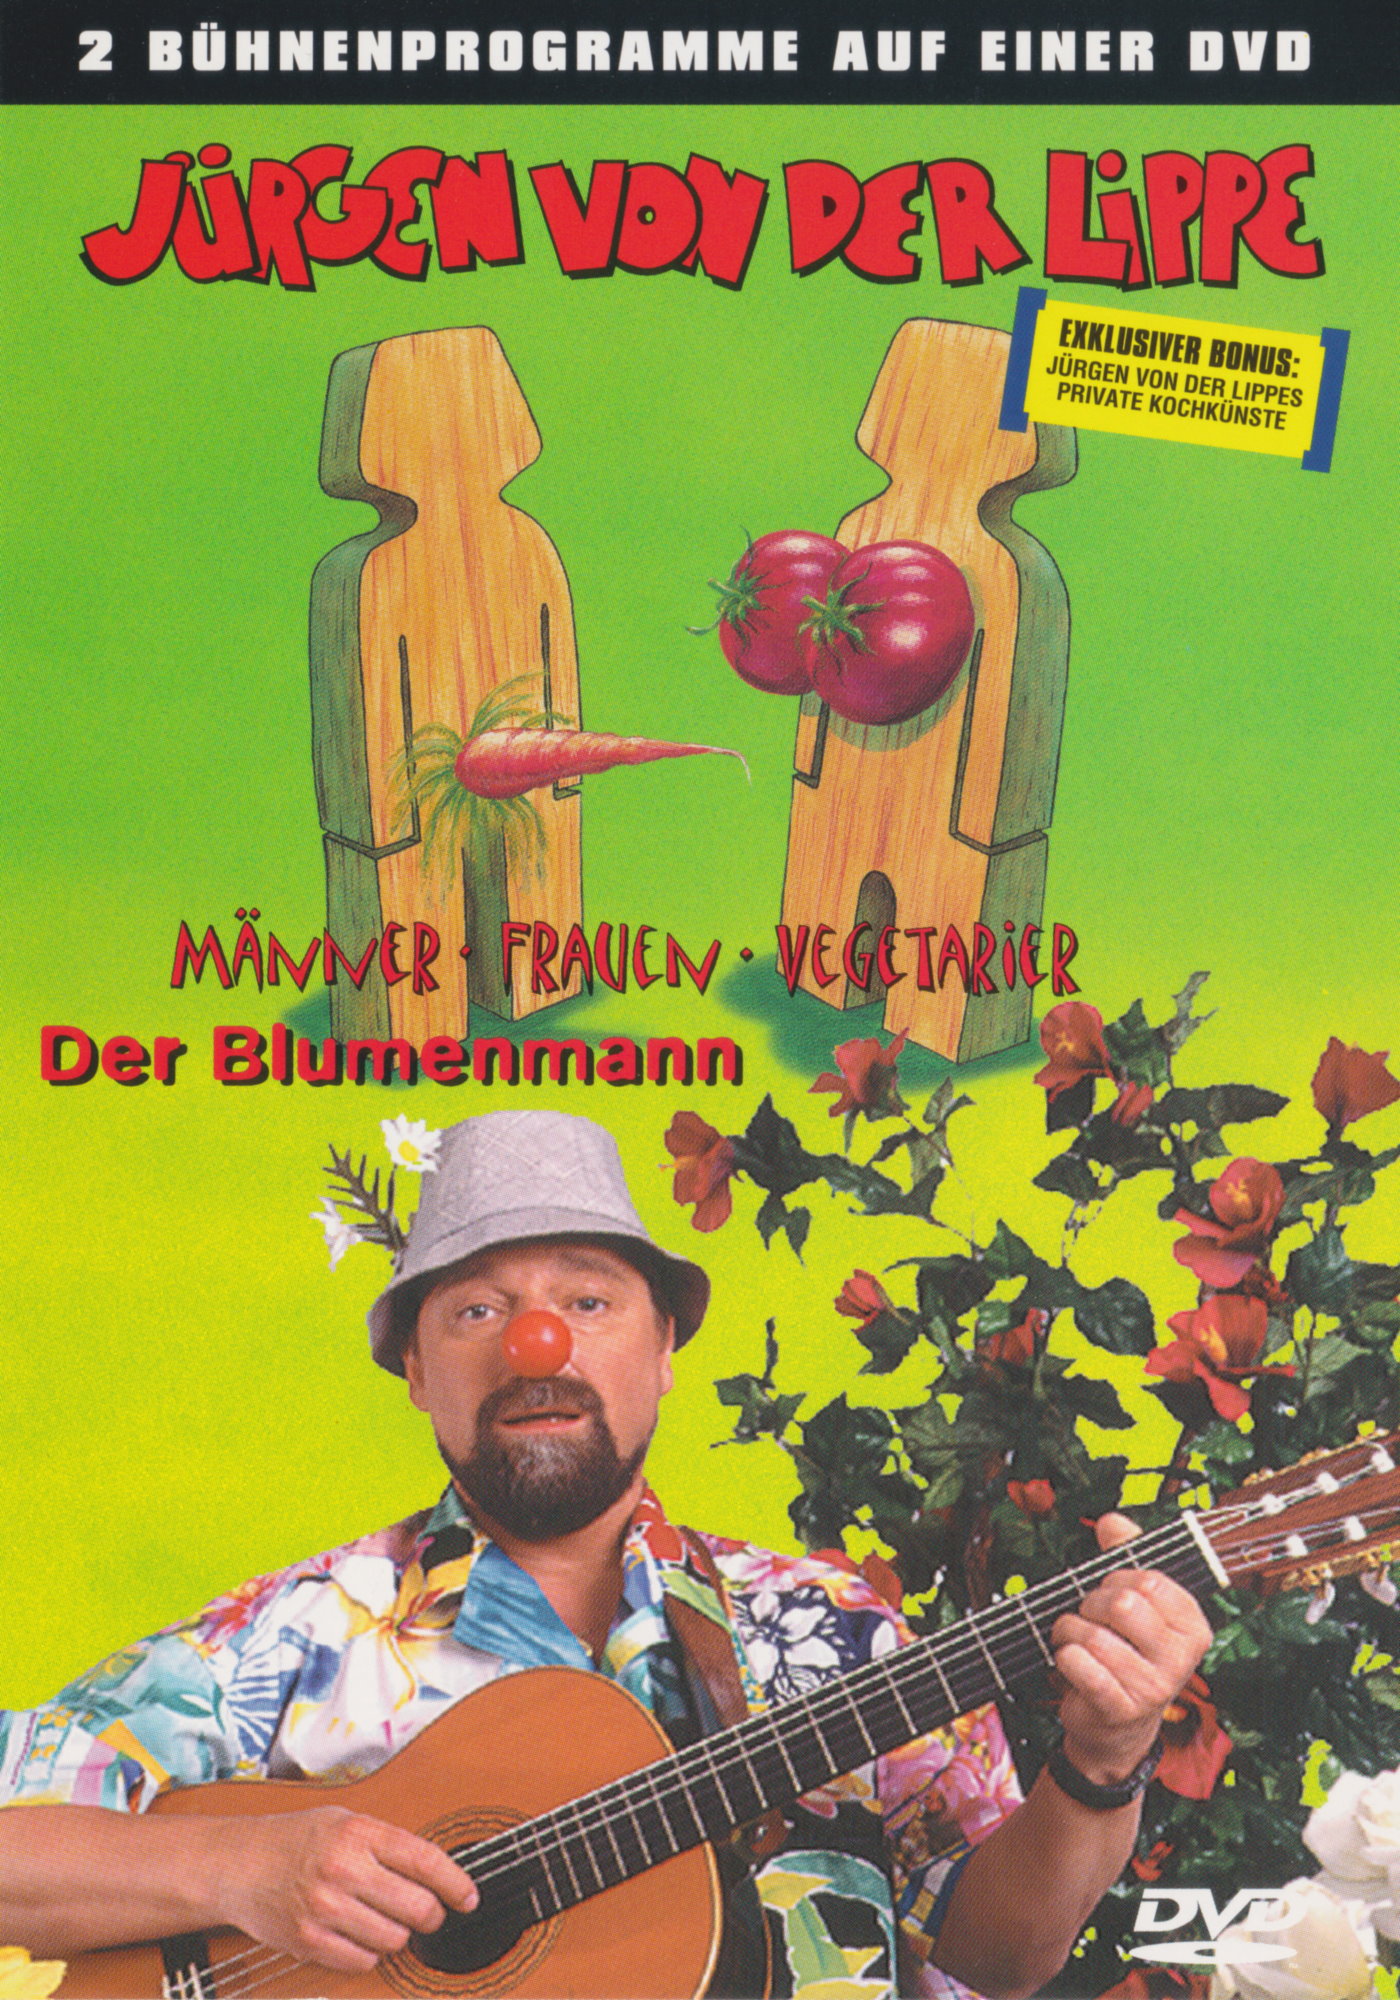 Cover - Jürgen von der Lippe - Der Blumenmann & Männer, Frauen, Vegetarier.jpg